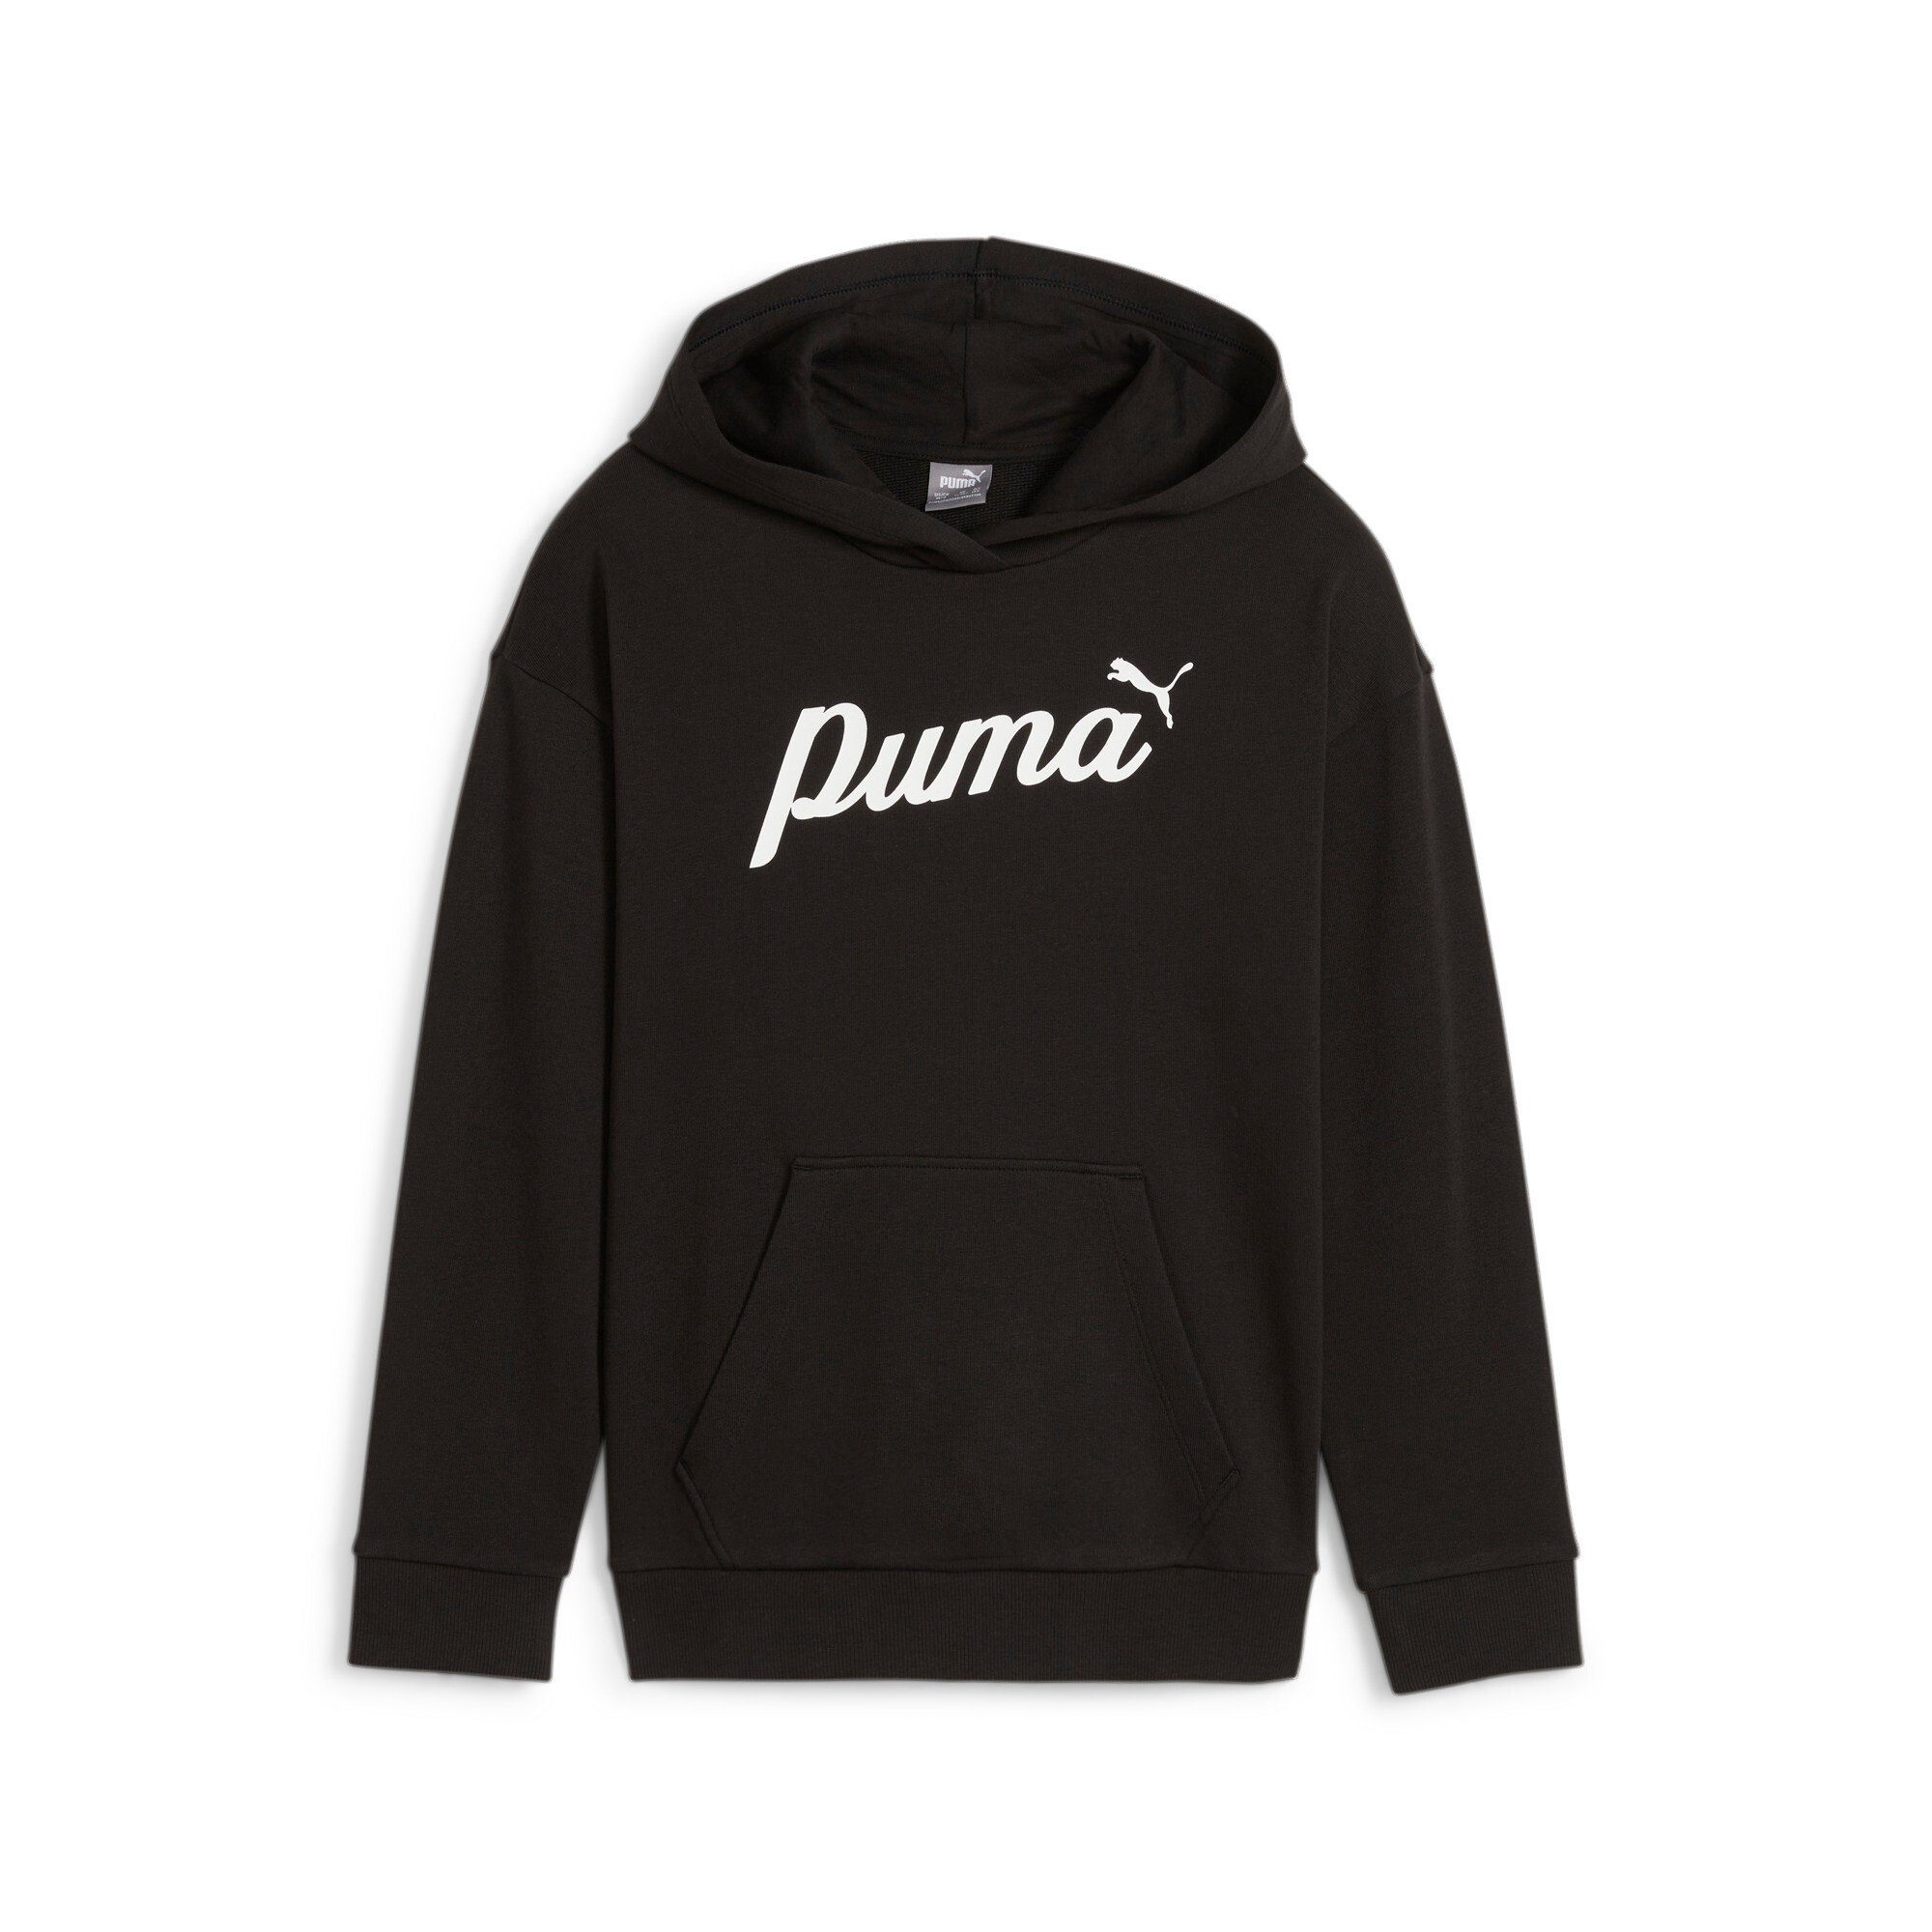 Puma hoodie zwart Trui Katoen Capuchon Printopdruk 128